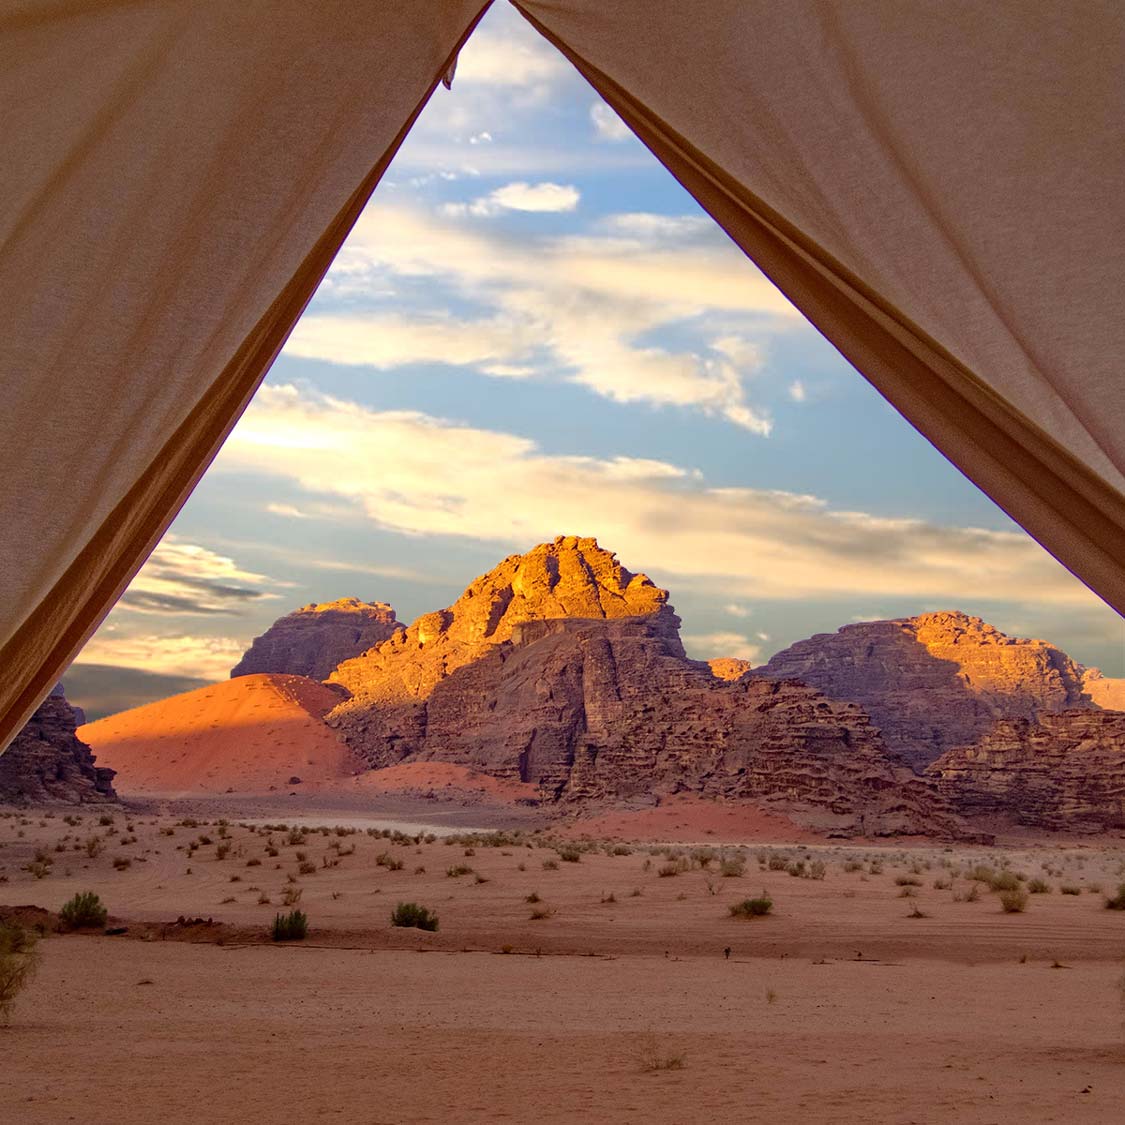 Mountains seen through the entrance to a Bedouin tent in Jordan